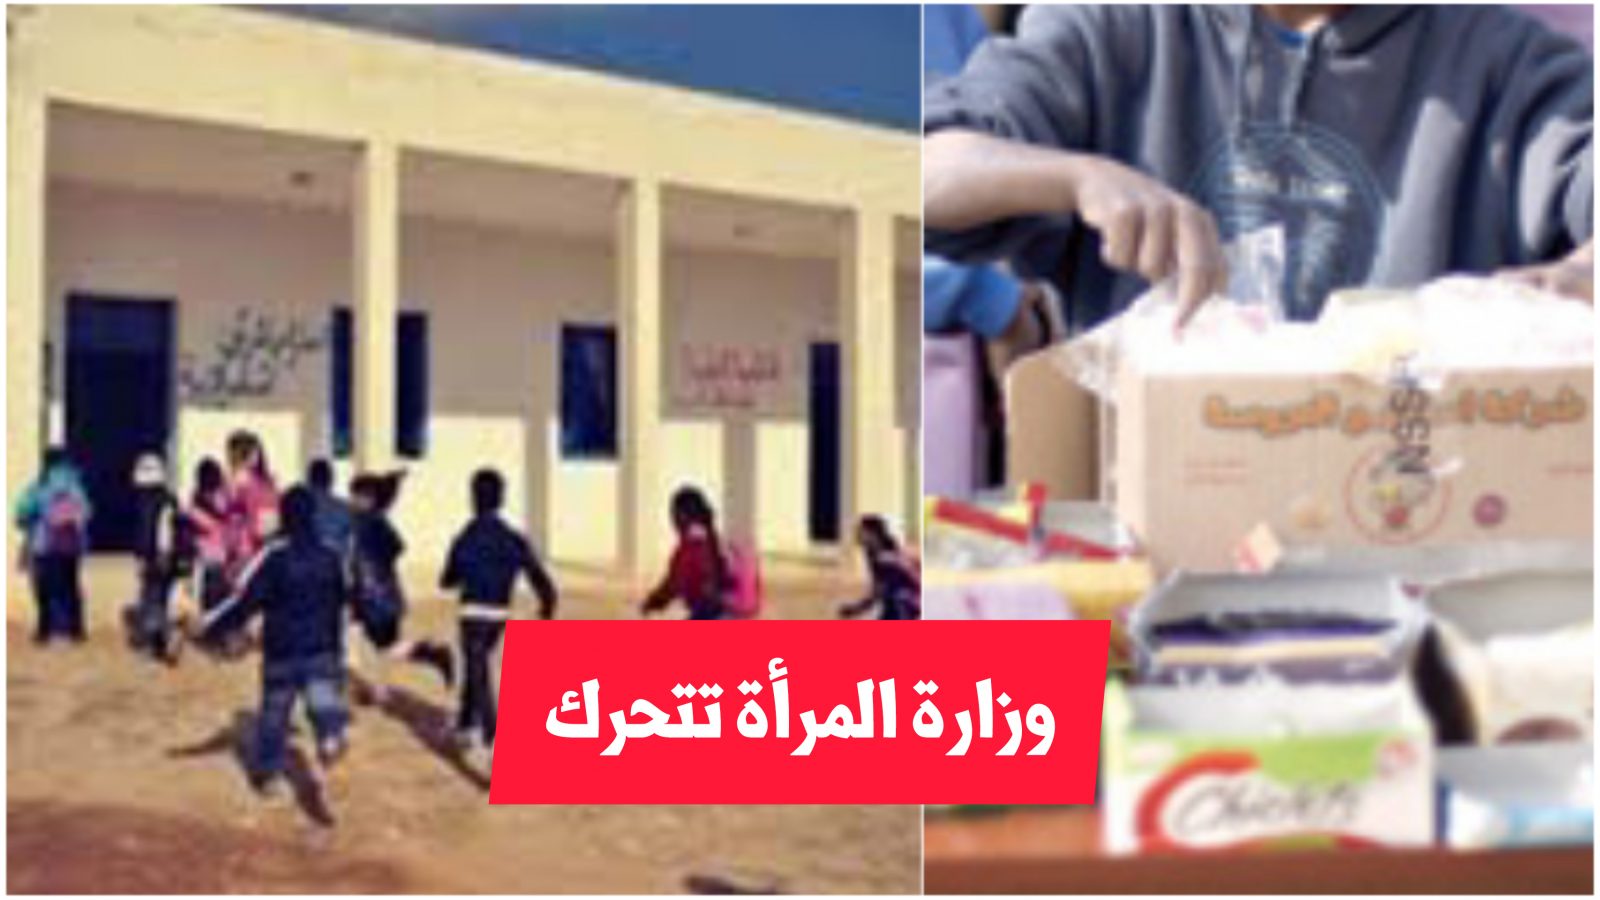 انقطع عن الدراسة لبيع الحلوى امام المدارس/ وزارة المرأة تتدخل